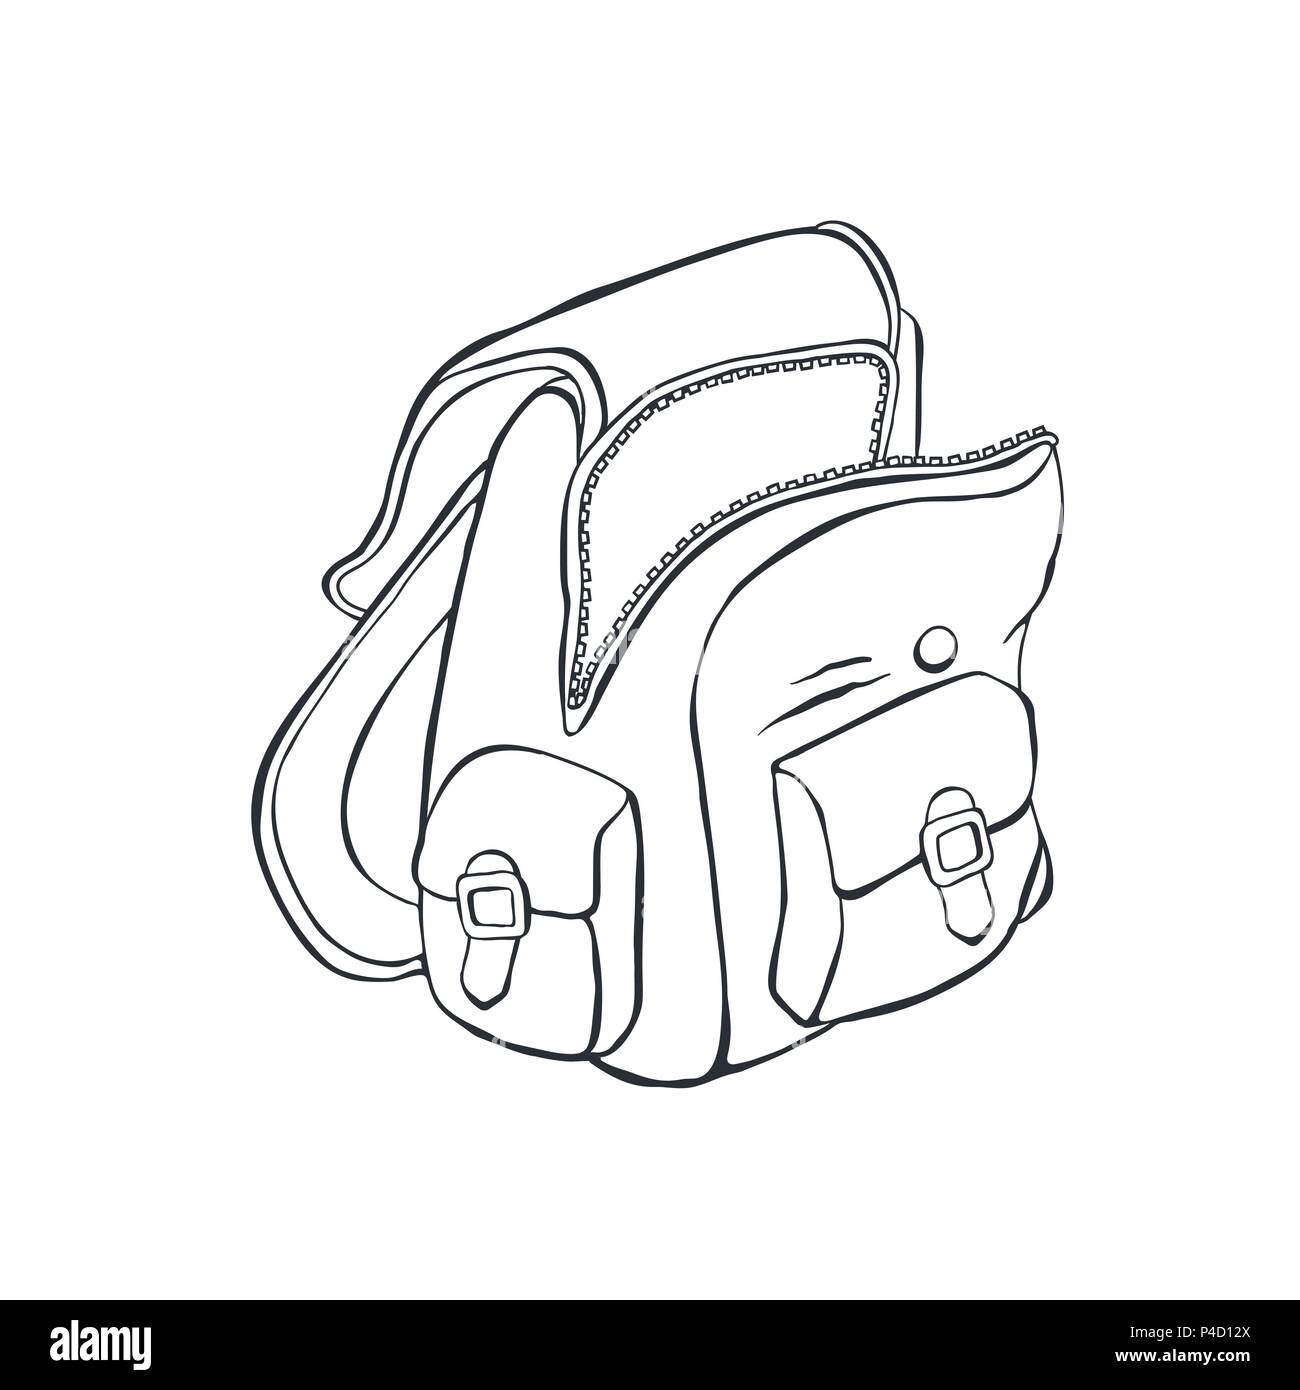 school backpack sketch Stock Vector Image & Art - Alamy